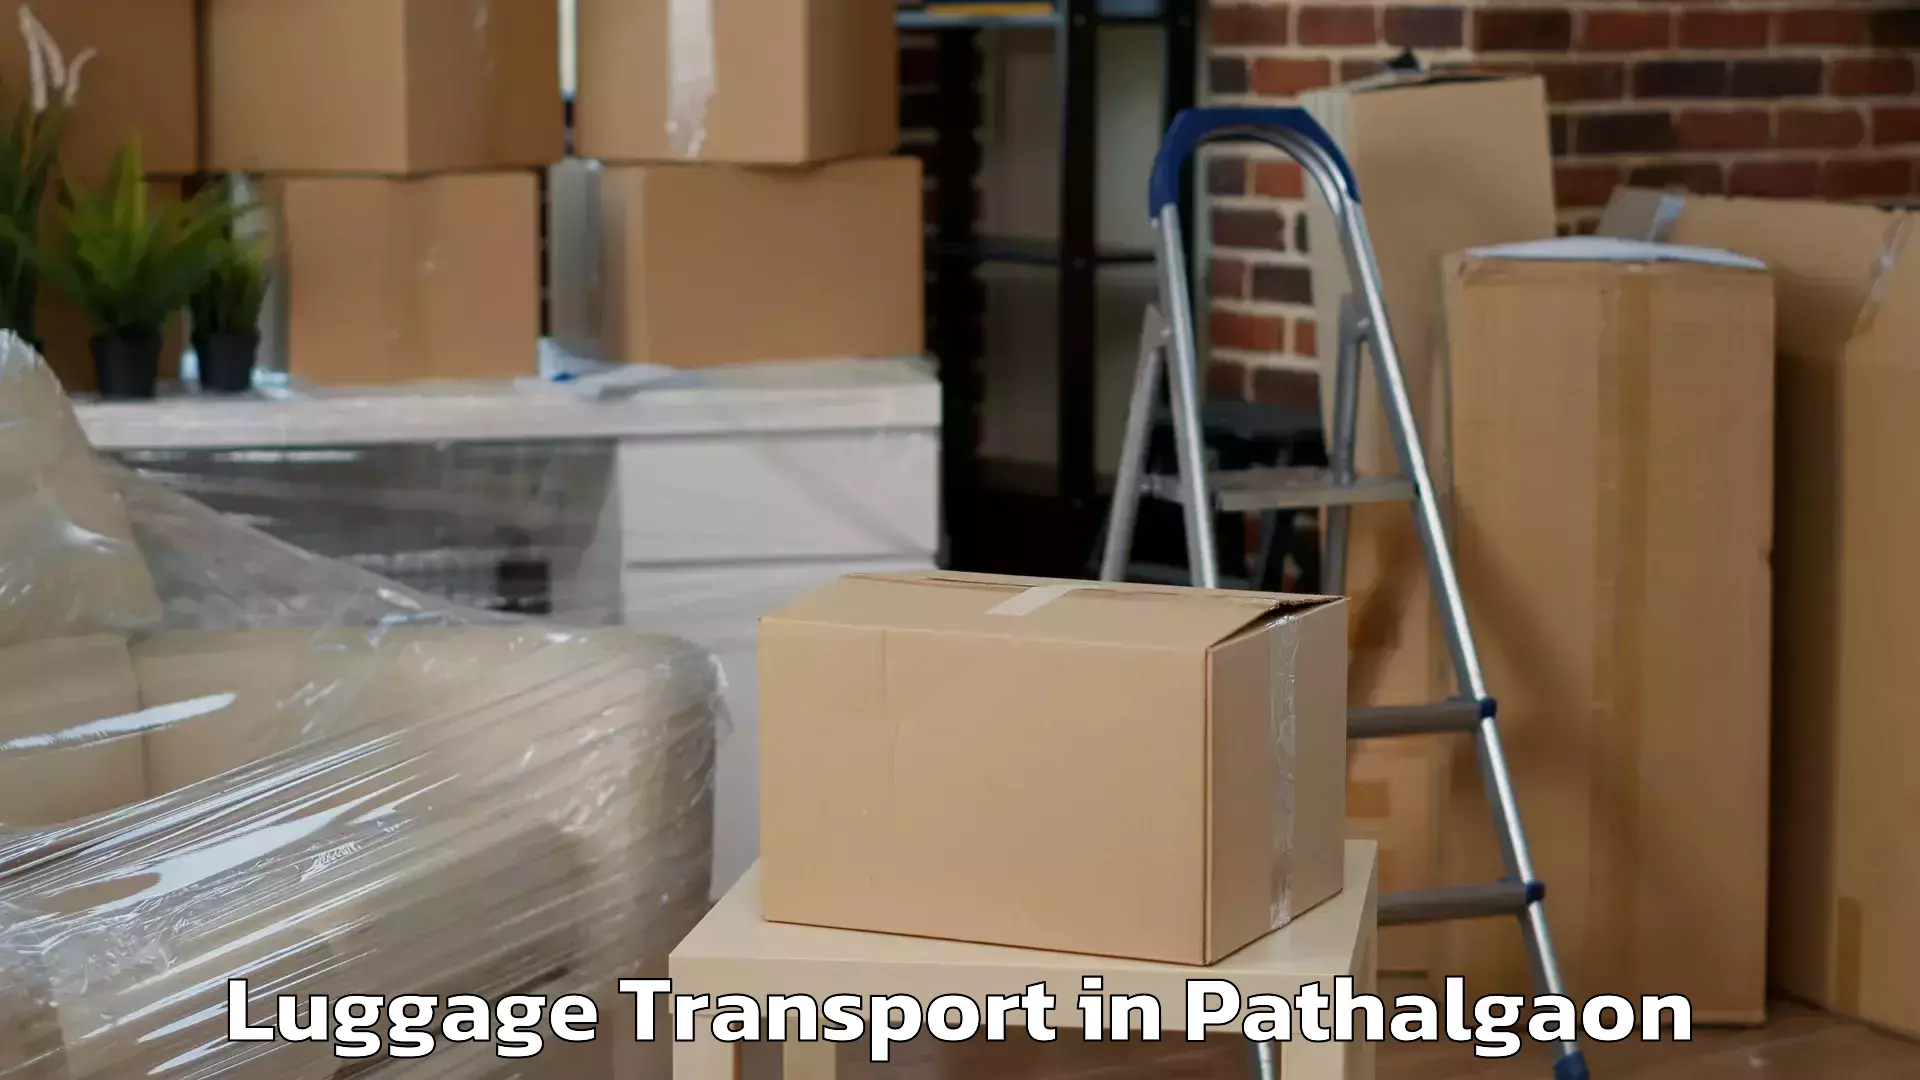 Holiday baggage shipping in Pathalgaon